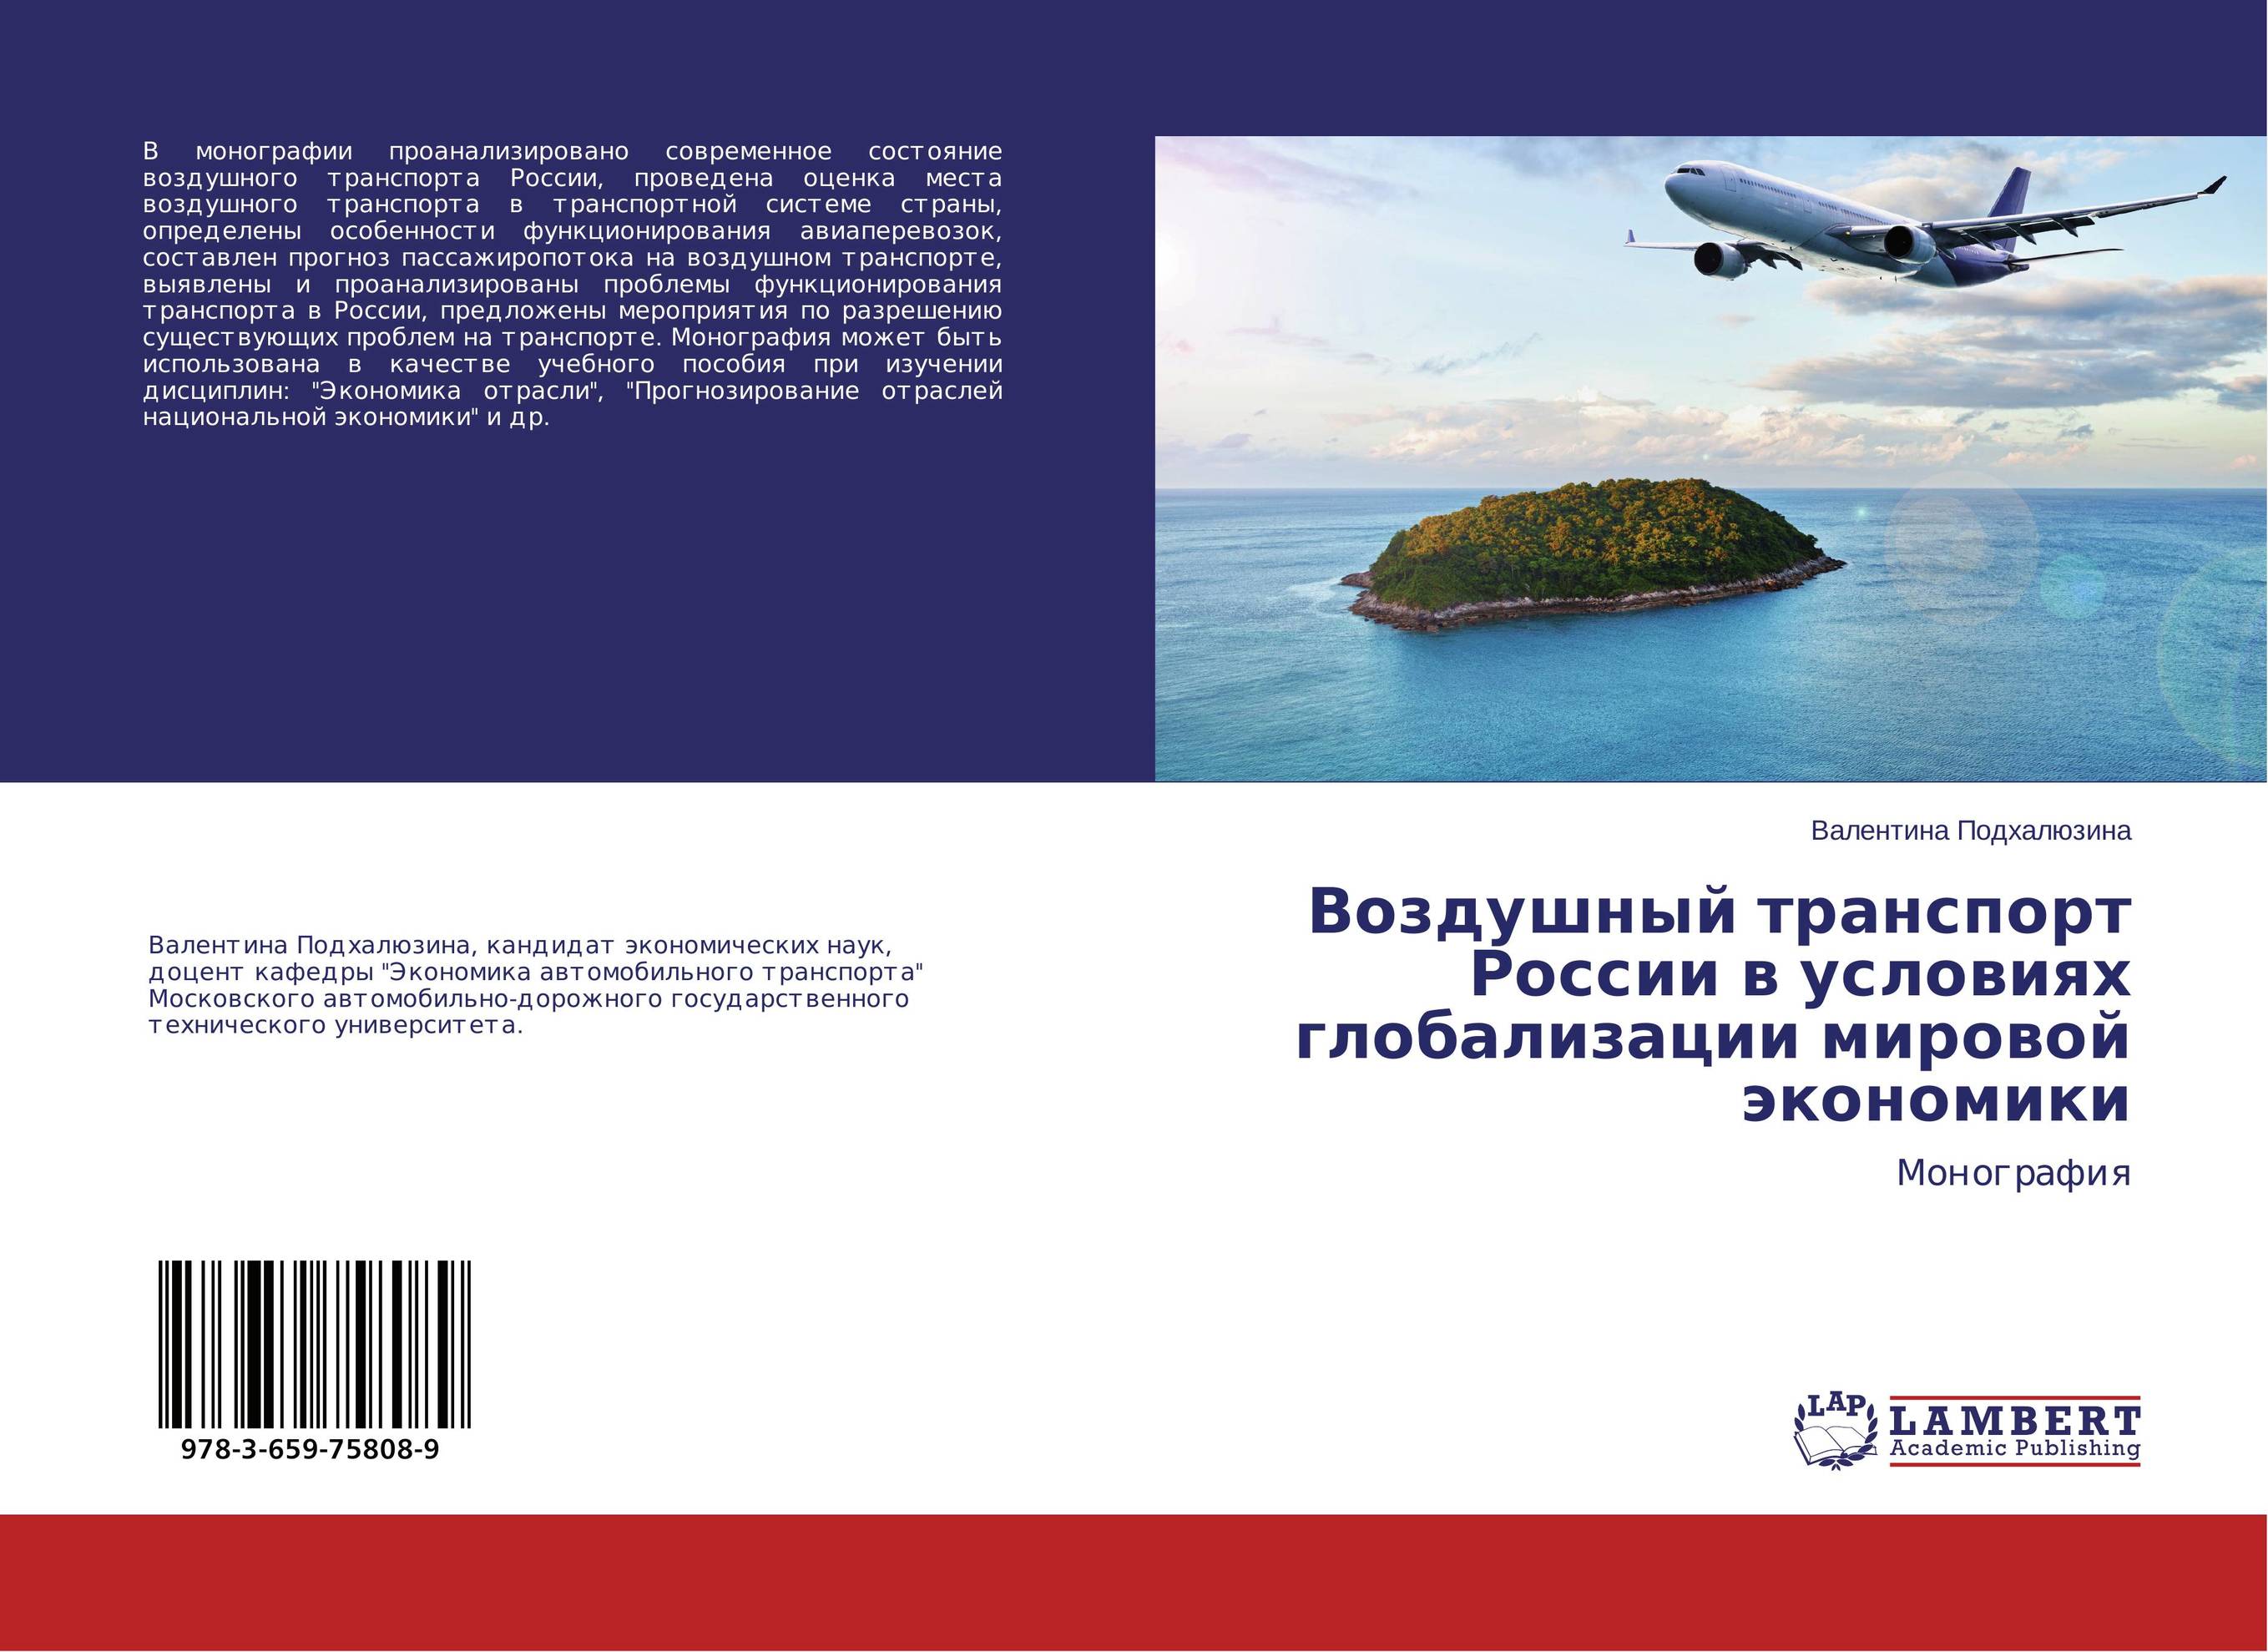 
        Воздушный транспорт России в условиях глобализации мировой экономики. Монография.
      